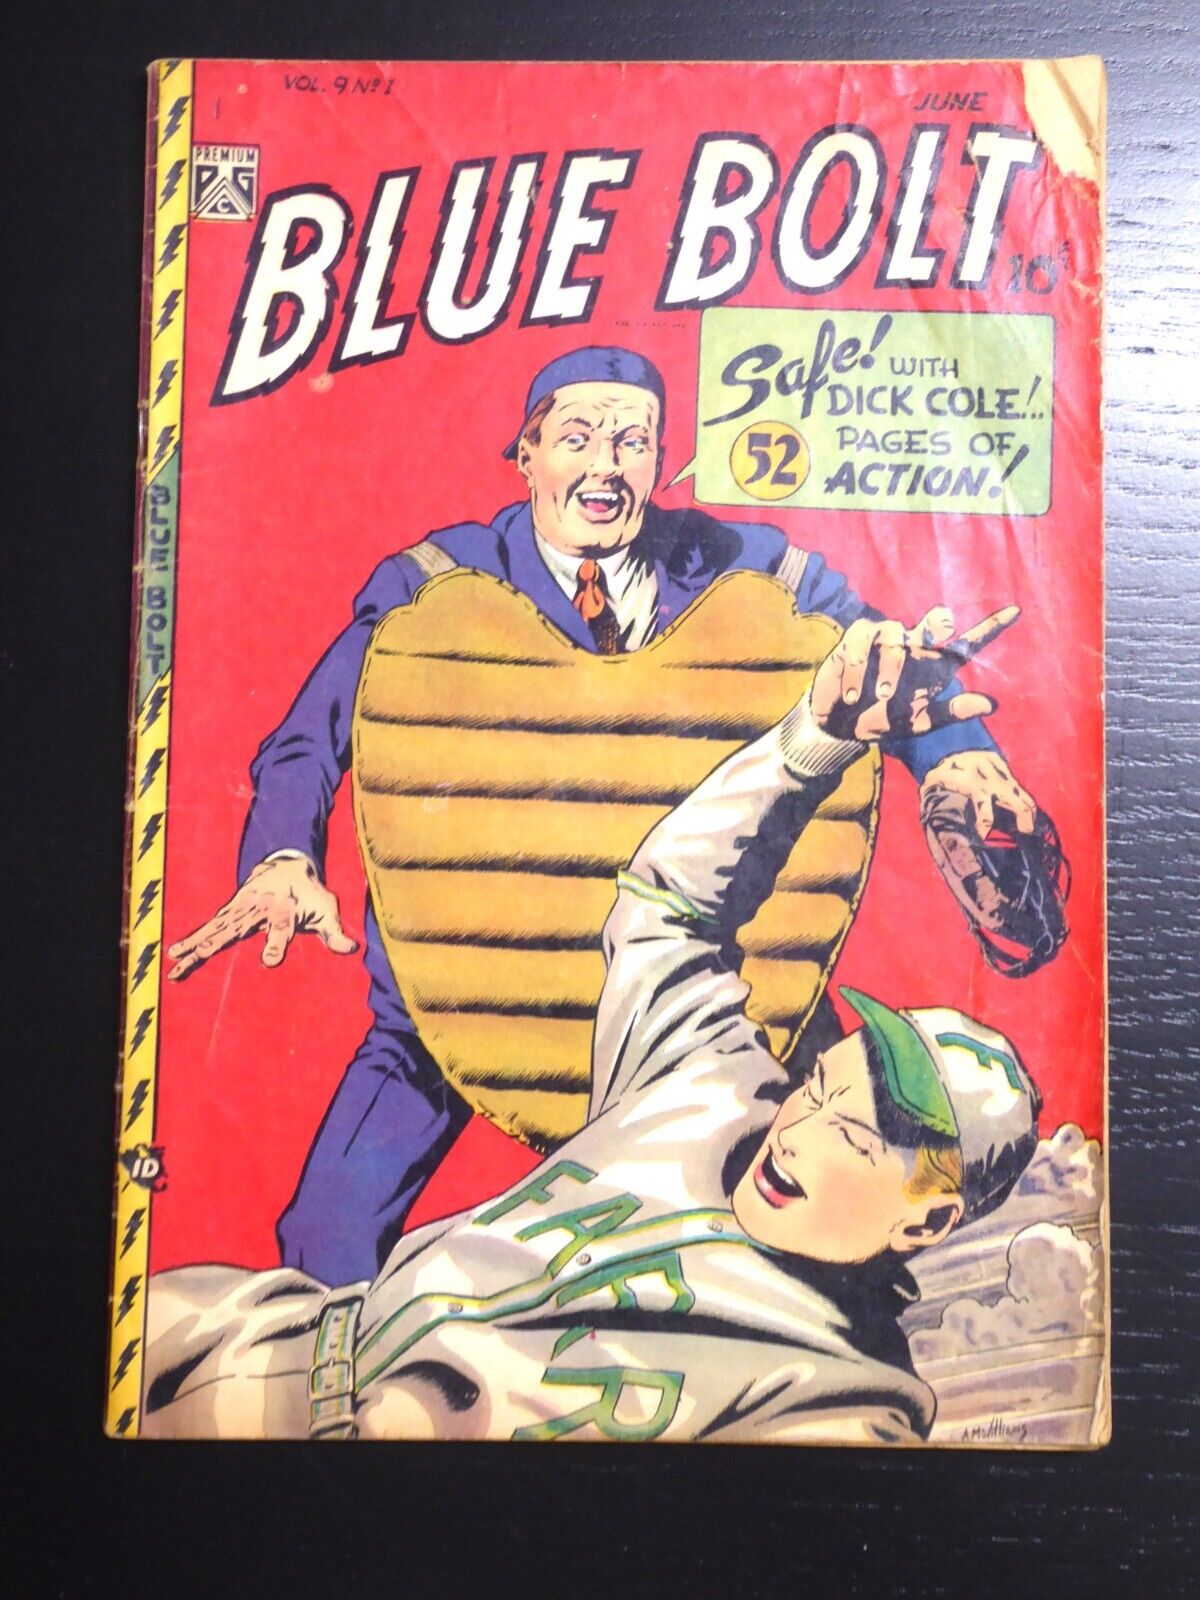 Blue Bolt Vol. 9 No 1, June 1948, G, Al McWilliams Baseball Cover